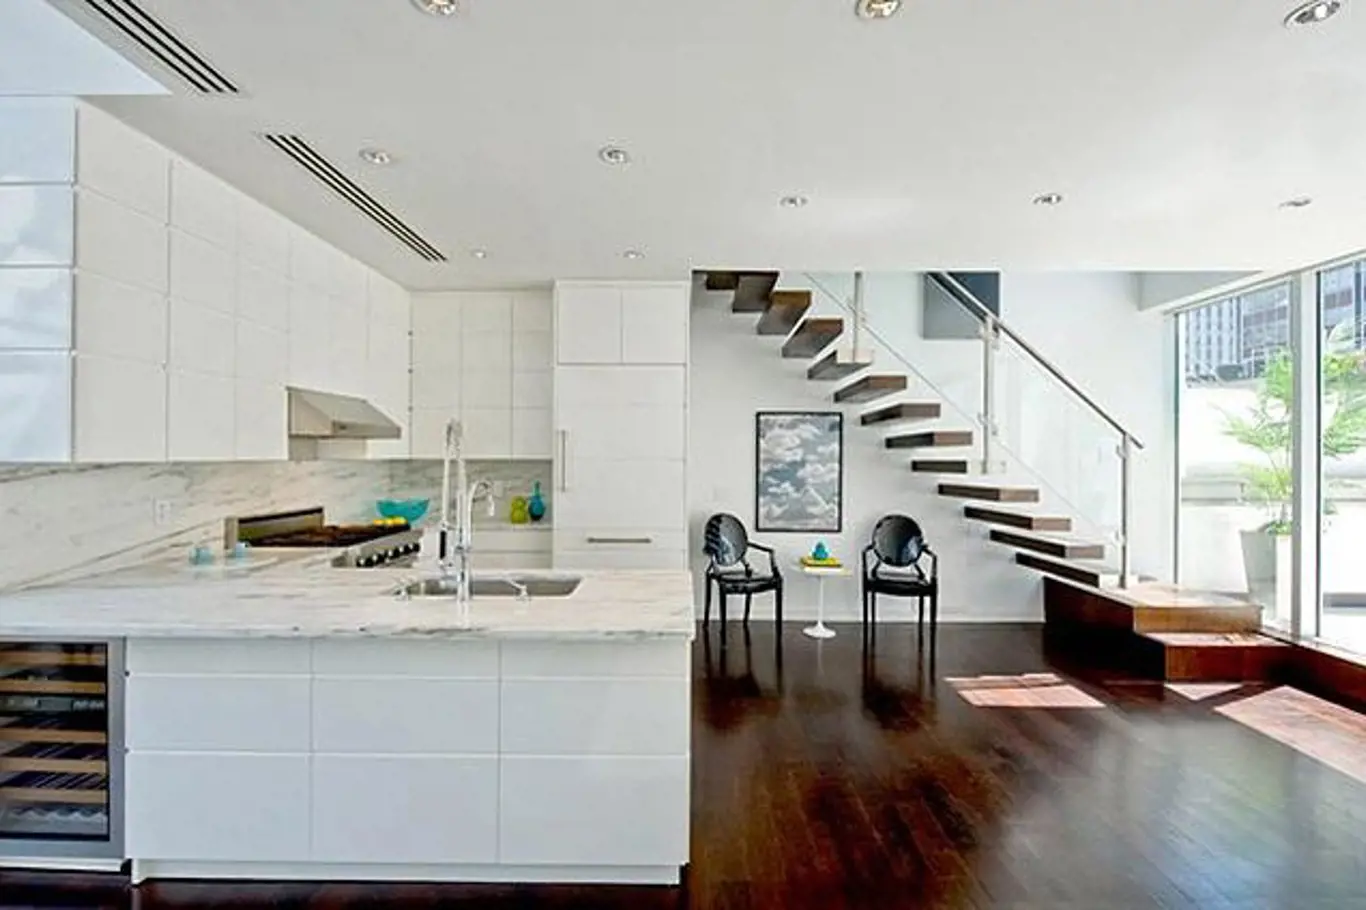 Interiér je zařízený v kontrastních barvách, v kuchyni převládá bílá barva.